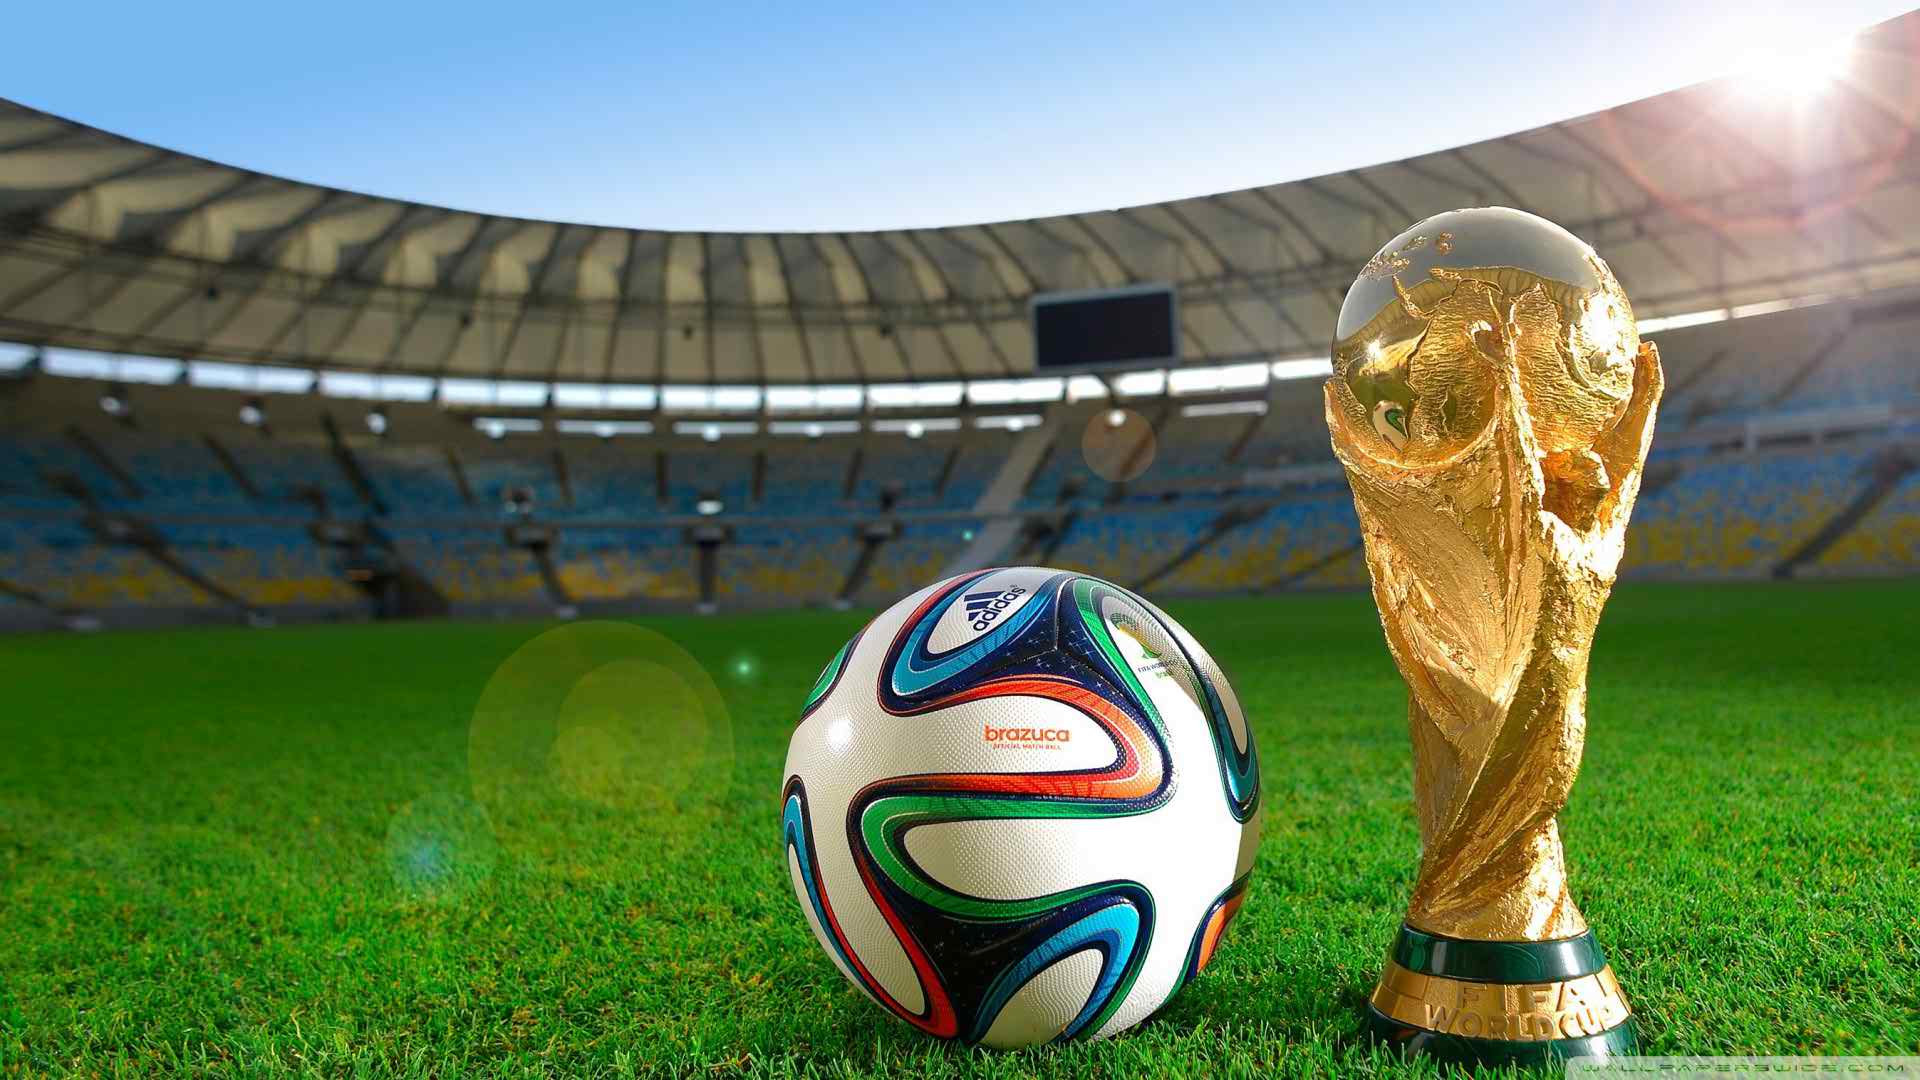 Bộ hình nền World Cup 2018 cho máy tính chất lượng cao Full HD